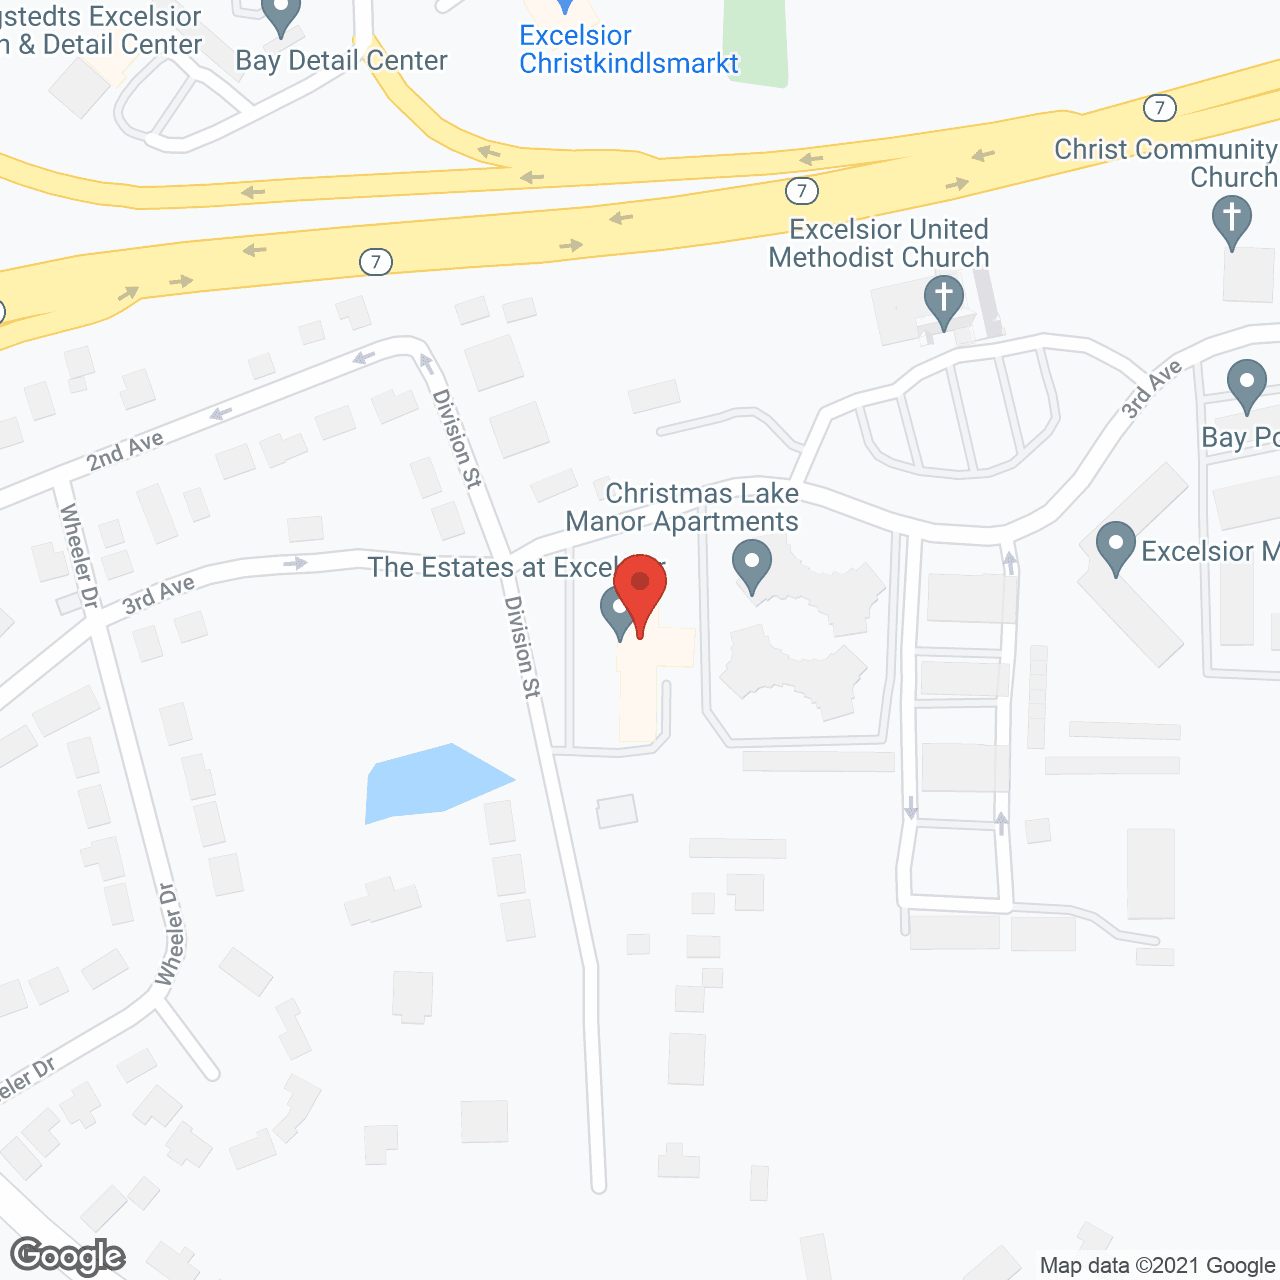 Golden LivingCenter - Excelsior in google map